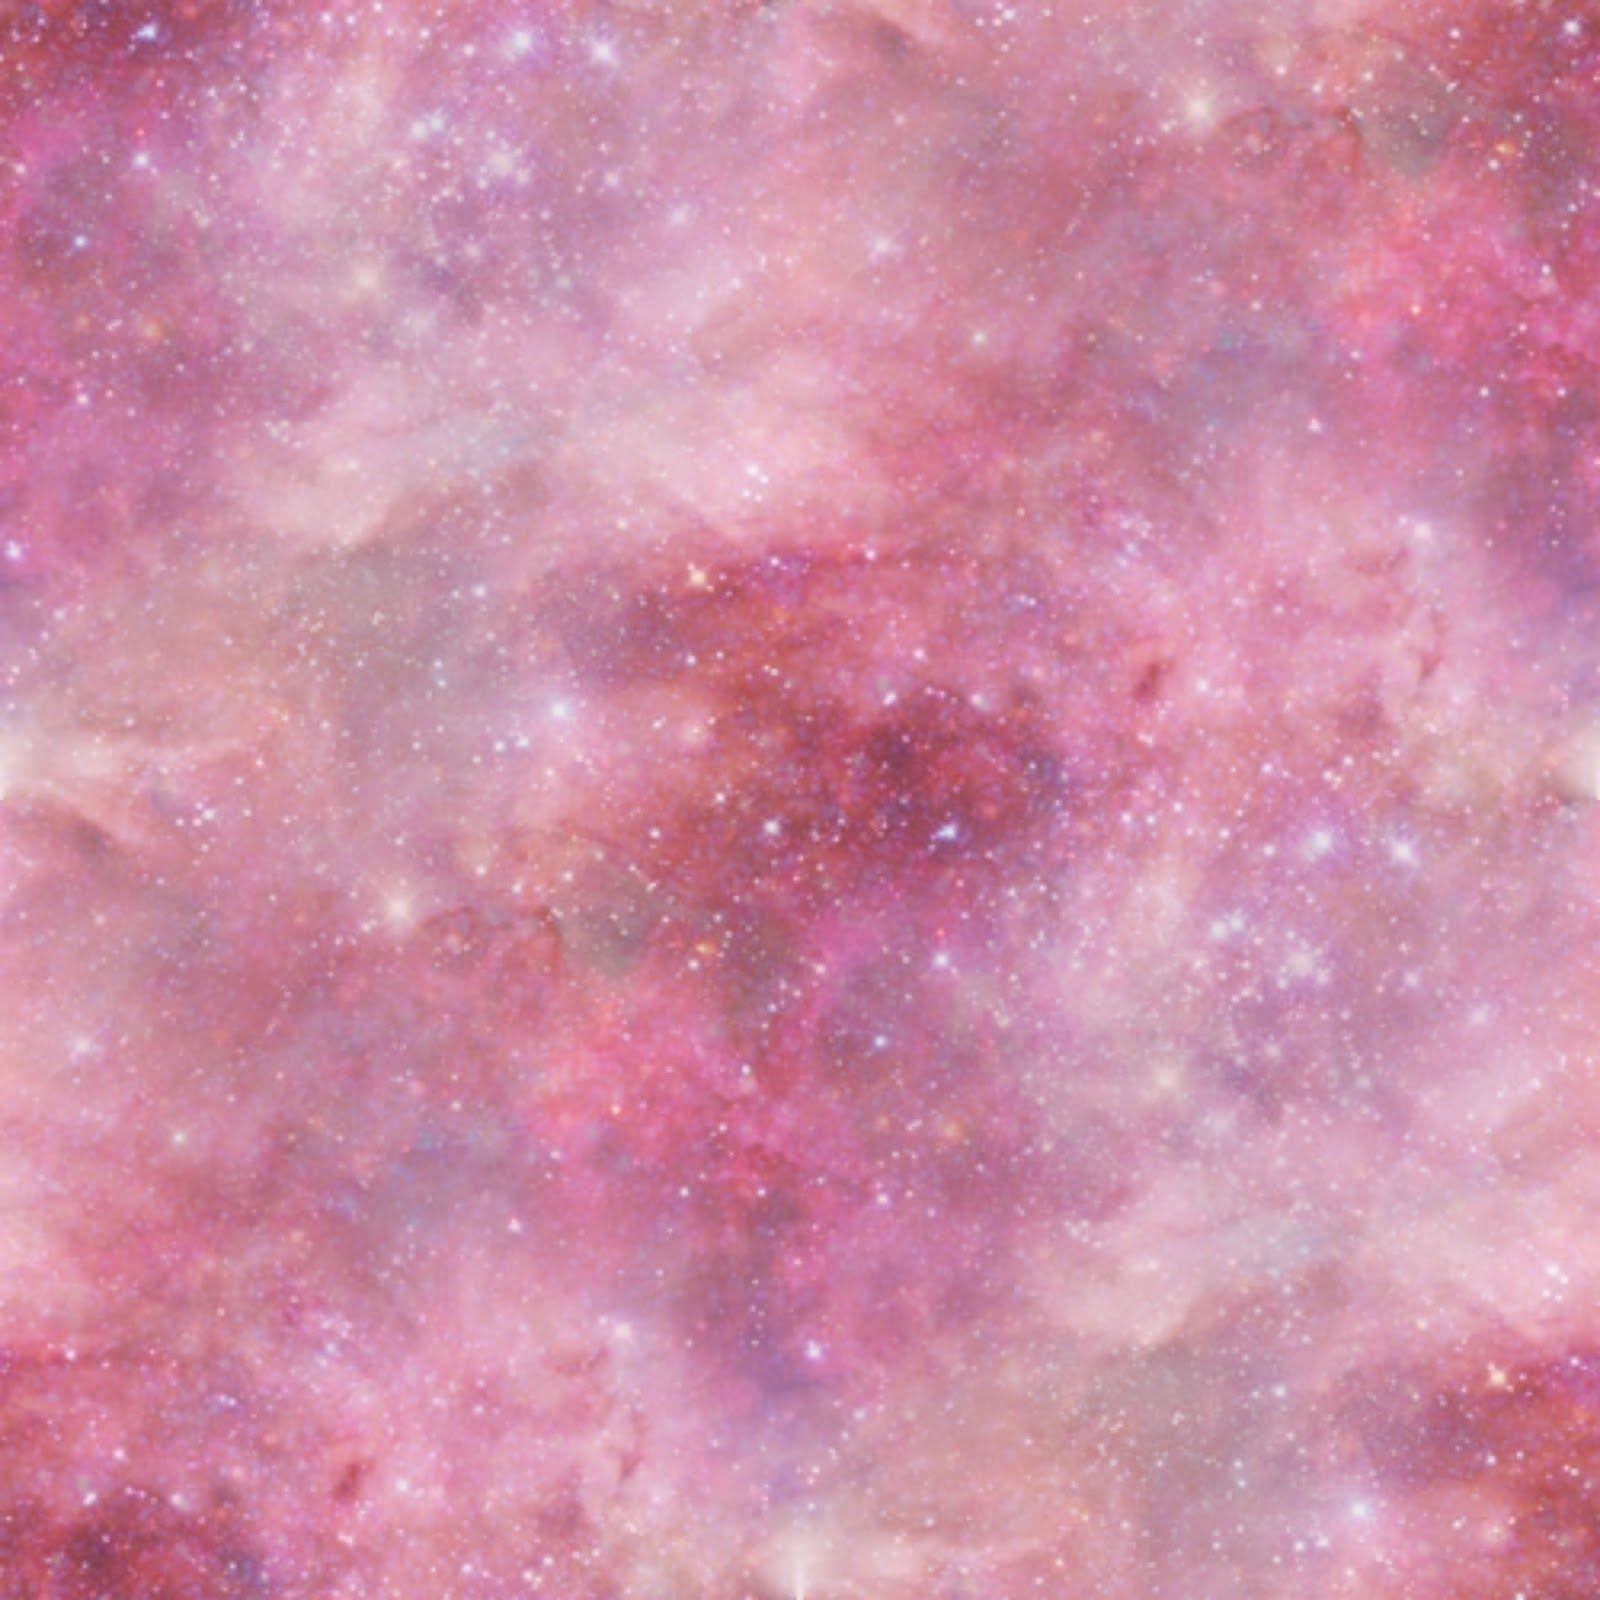 Hãy chiêm ngưỡng những chiếc hình nền Pastel Pink Galaxy Wallpapers ngọt ngào và đầy tinh tế này, để cảm nhận được sự mềm mại và thư thái tràn ngập trong không gian bầu trời sống động.